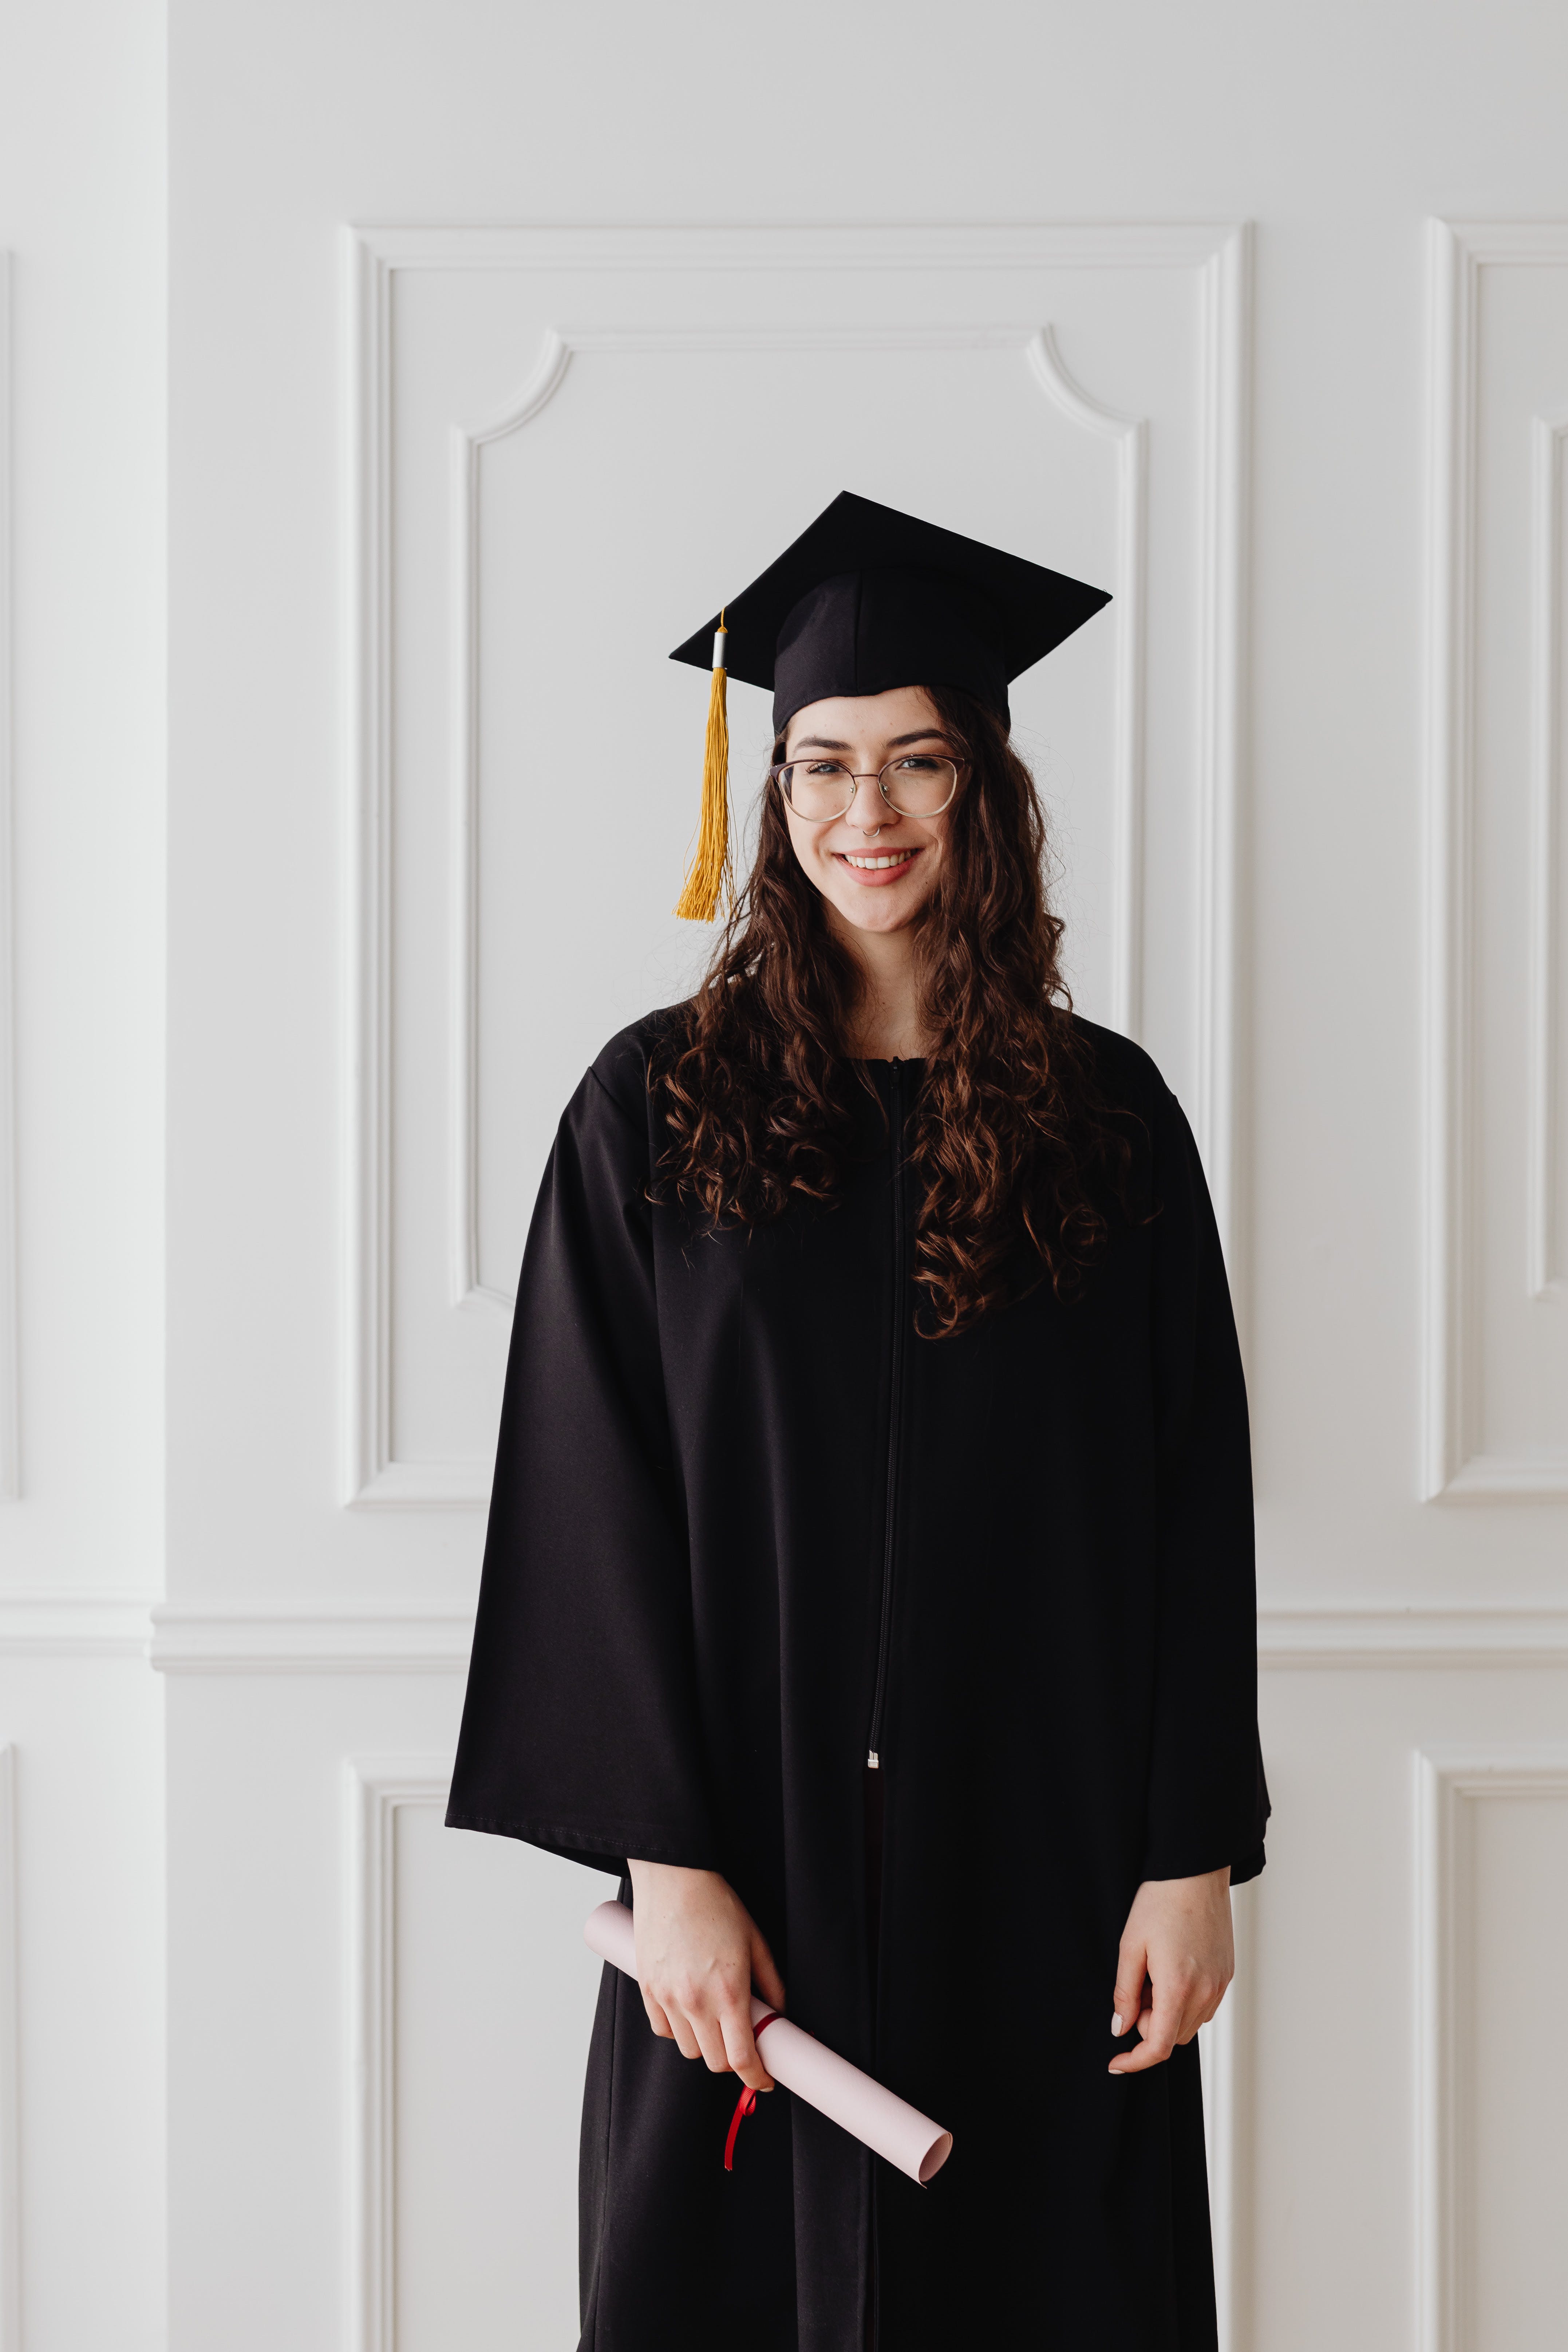 Une femme sourit alors qu'elle pose en tenue de diplômée | Source : Pexels